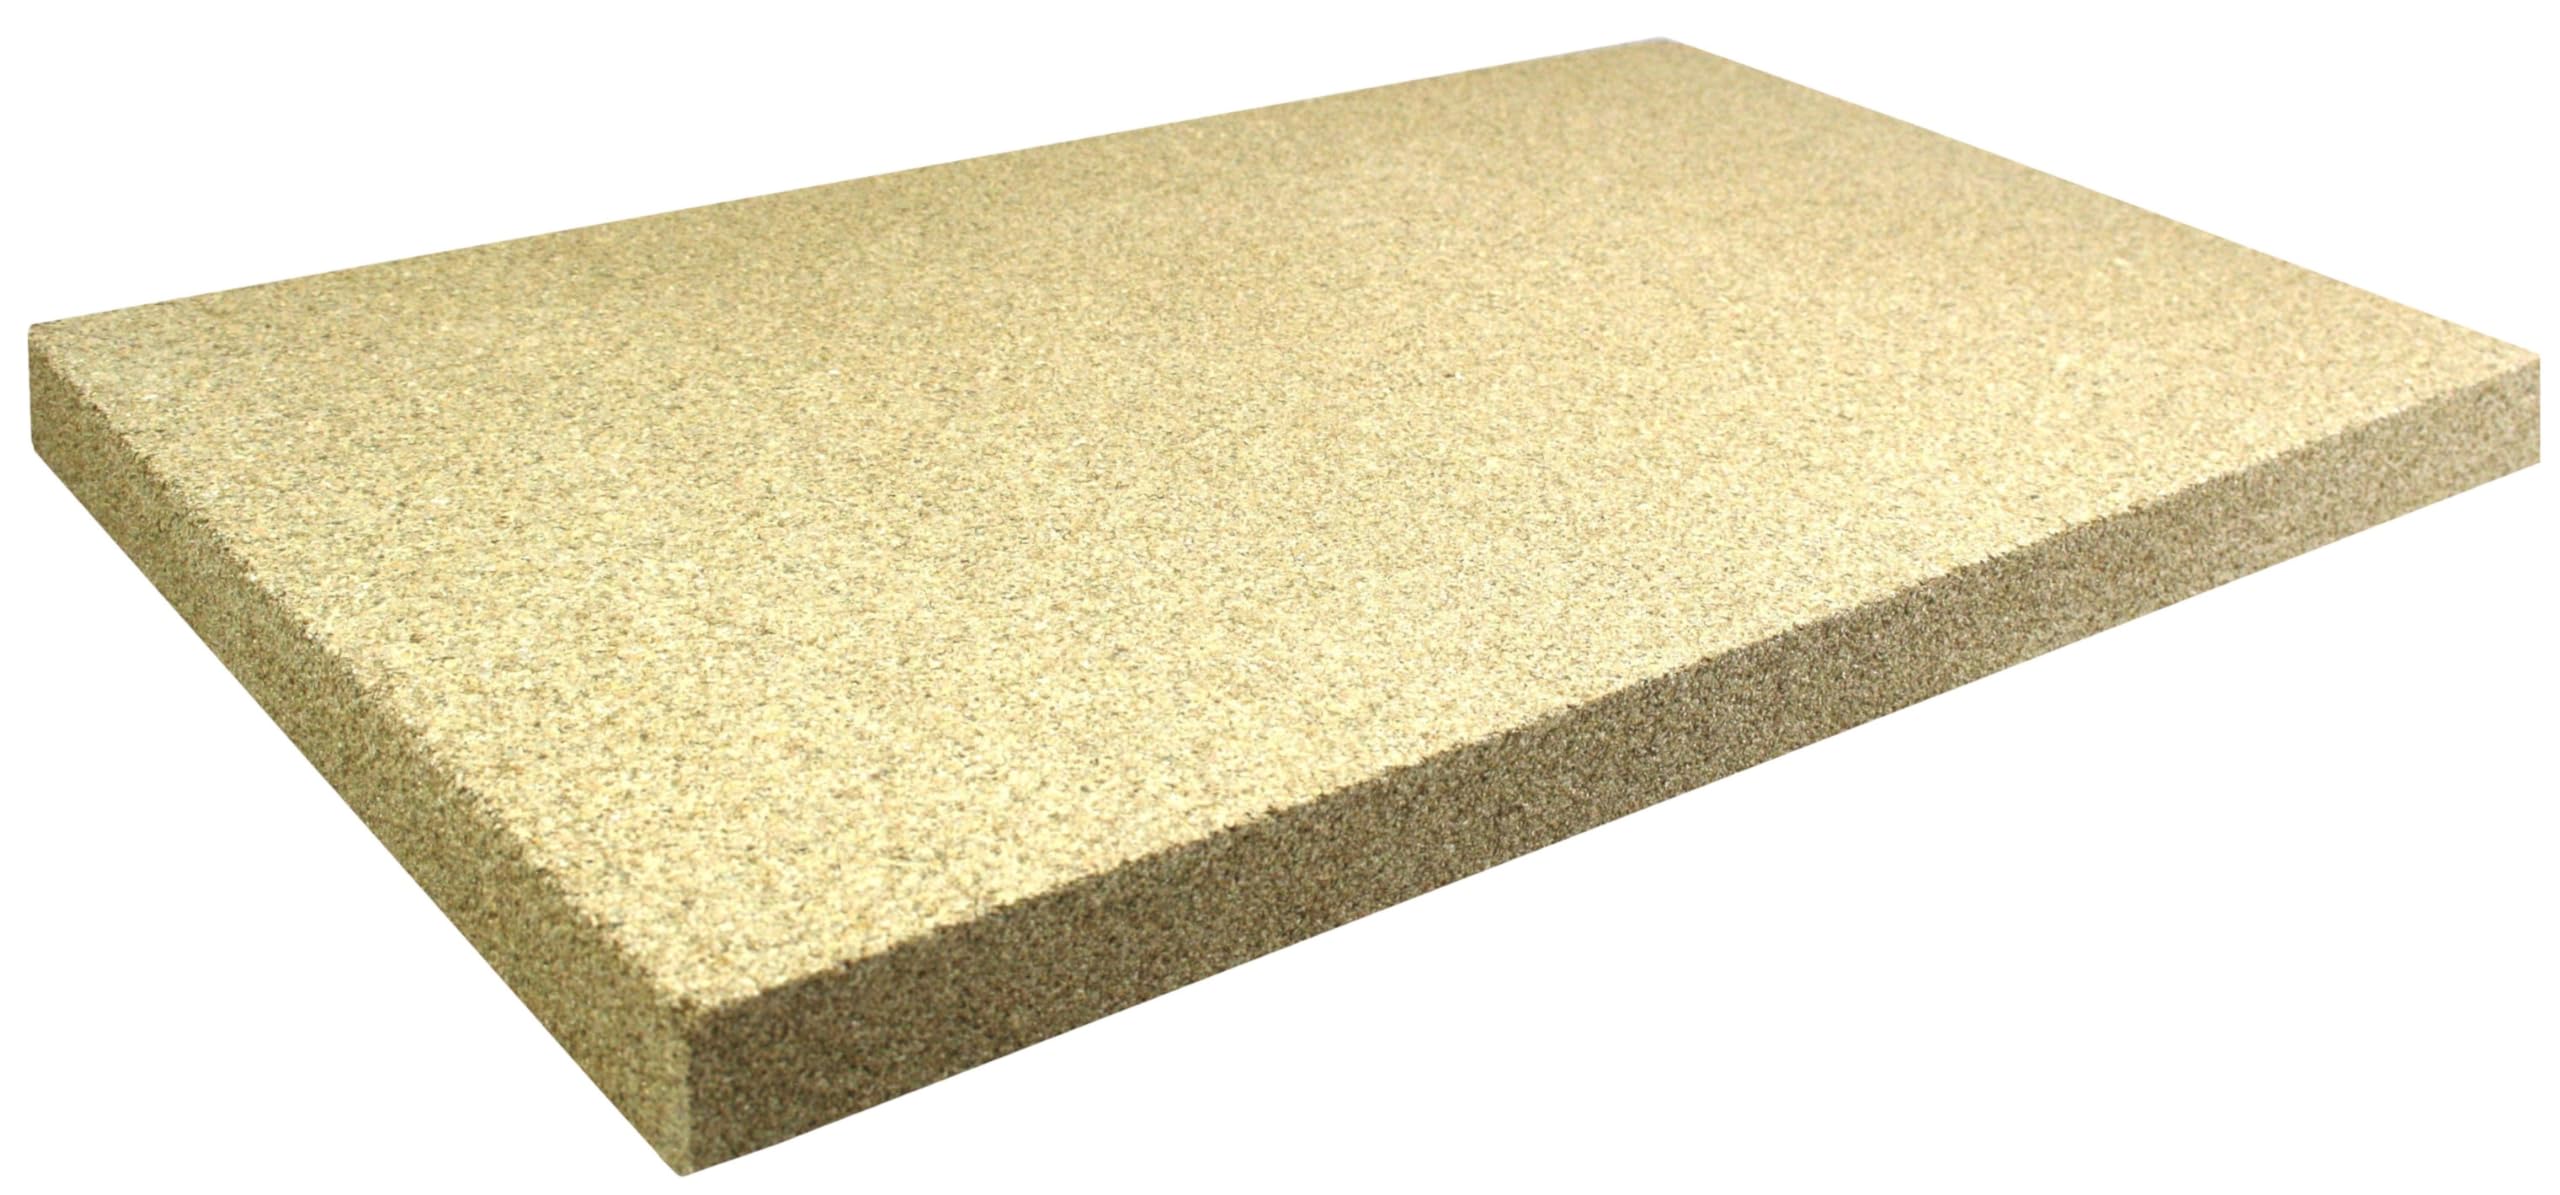 Vermiculite Platten Schamott Ersatz SF600 für die Feuerraum Auskleidung bis 1100°C Varianten (500 x 300 x 25 mm, 1 Stück)